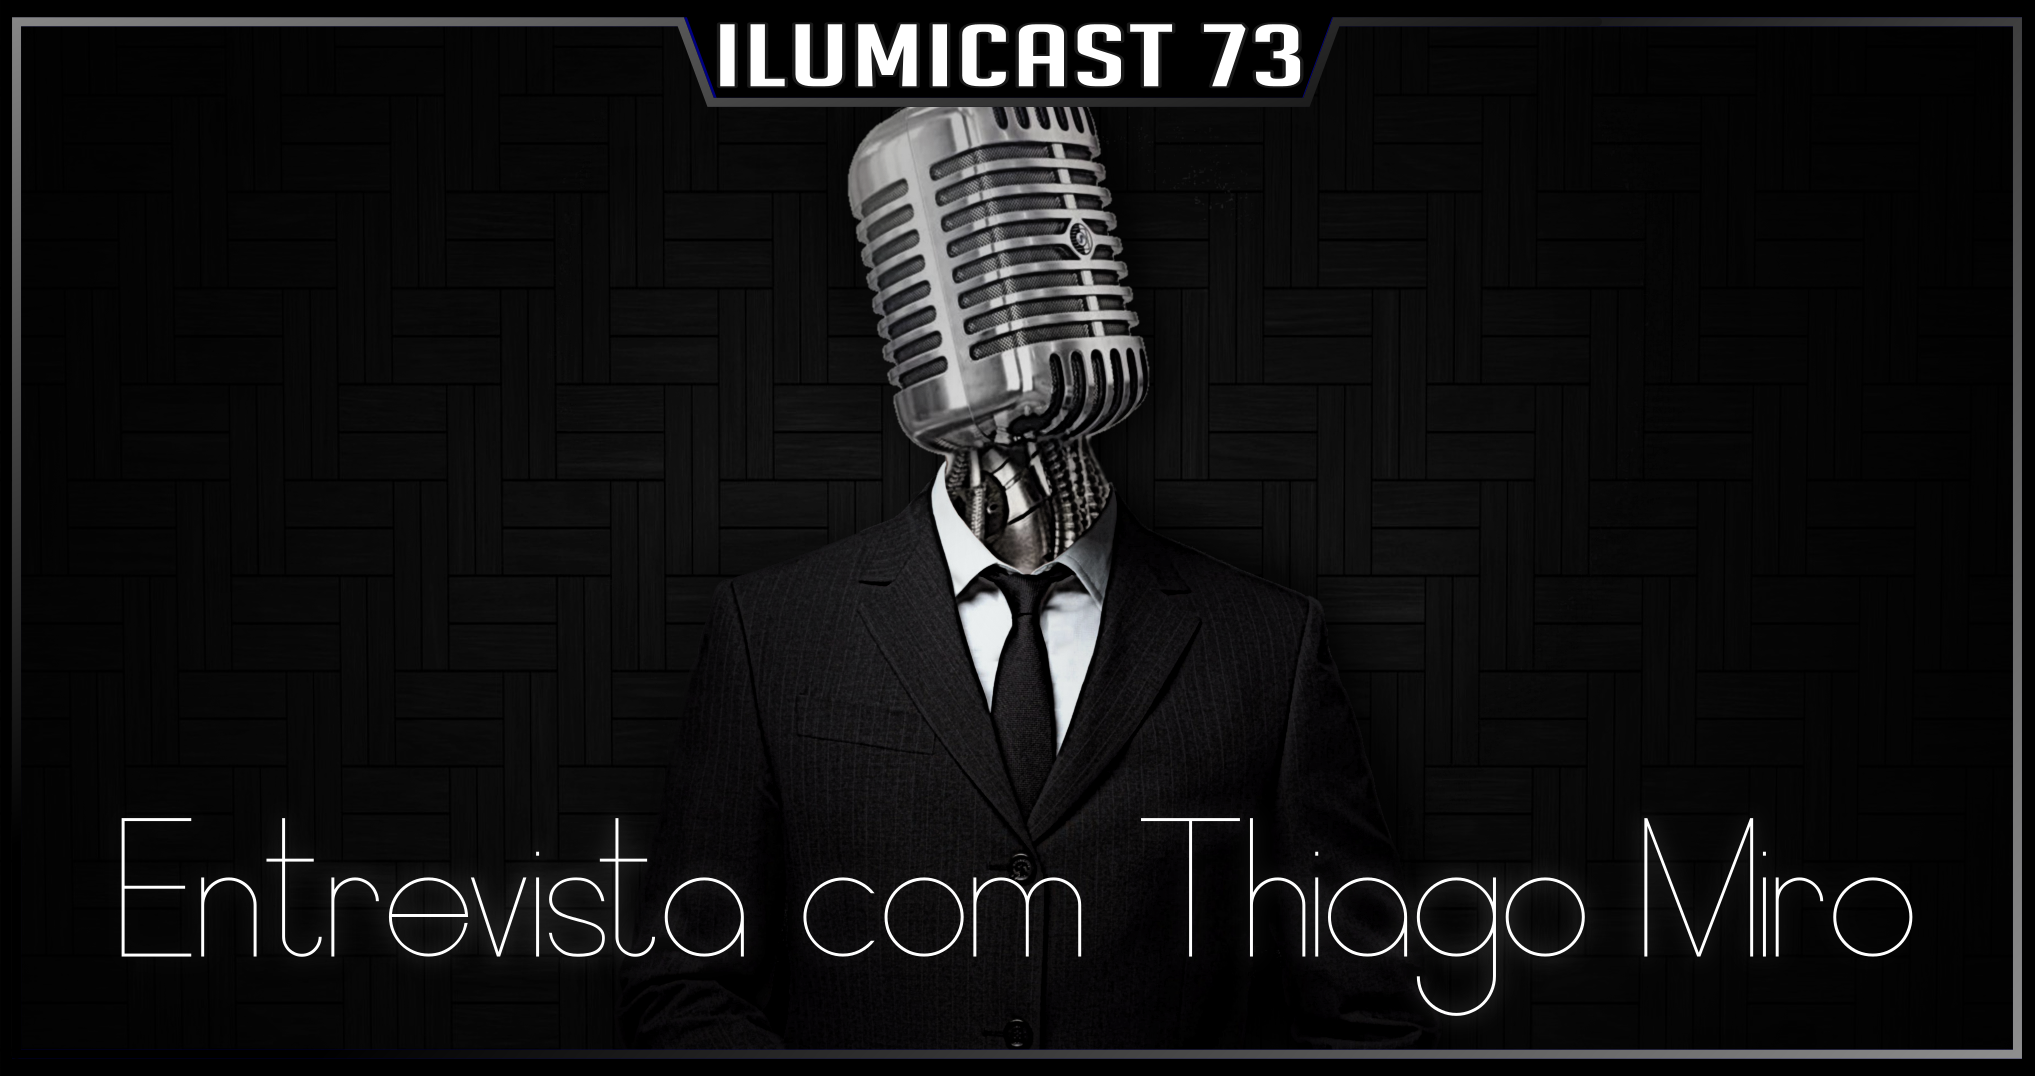 Você está visualizando atualmente Ilumicast #73 – Entrevista com Thiago Miro, um papo sobre podcasts